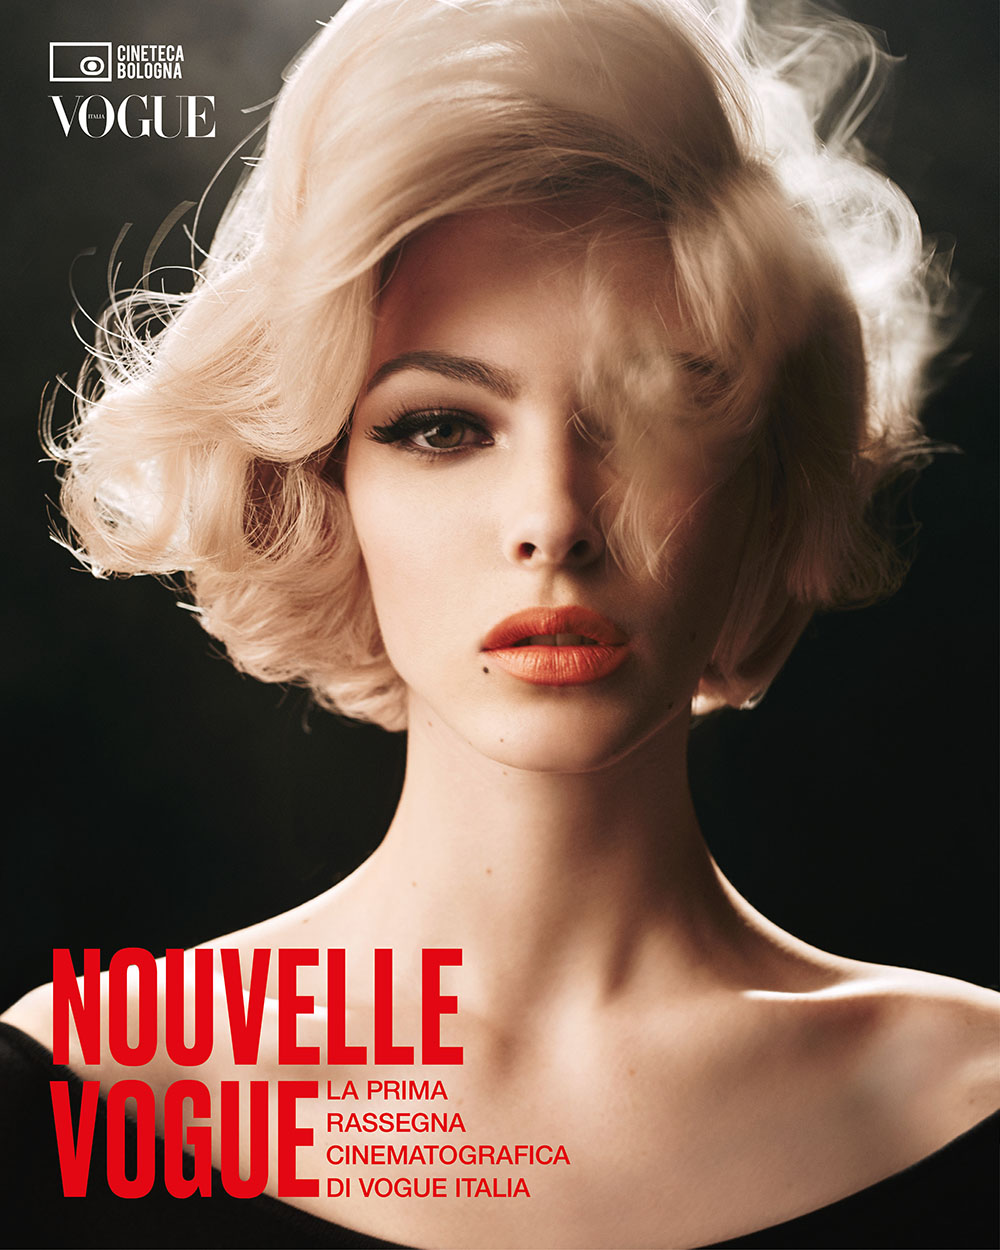 , Vogue Italia compie 60 anni e lancia la rassegna cinematografica Nouvelle Vogue